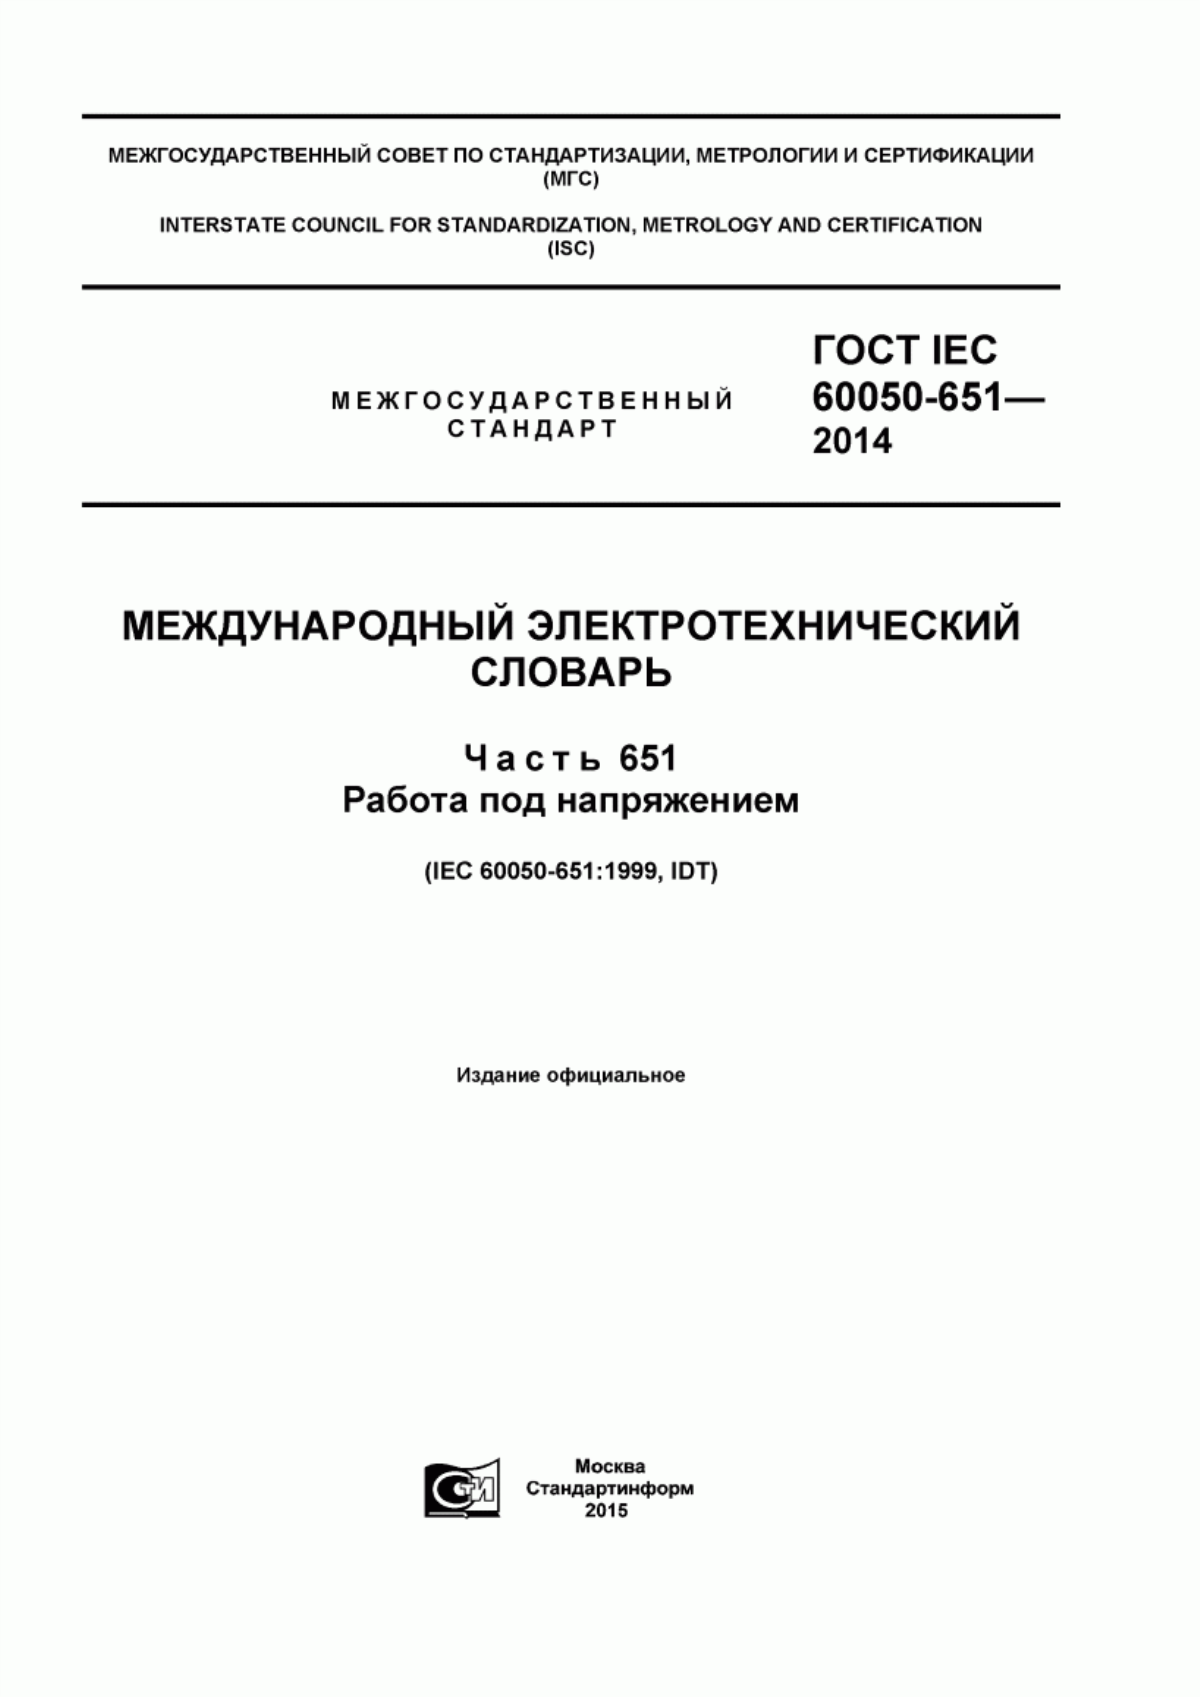 ГОСТ IEC 60050-651-2014 Международный электротехнический словарь. Часть 651. Работа под напряжением